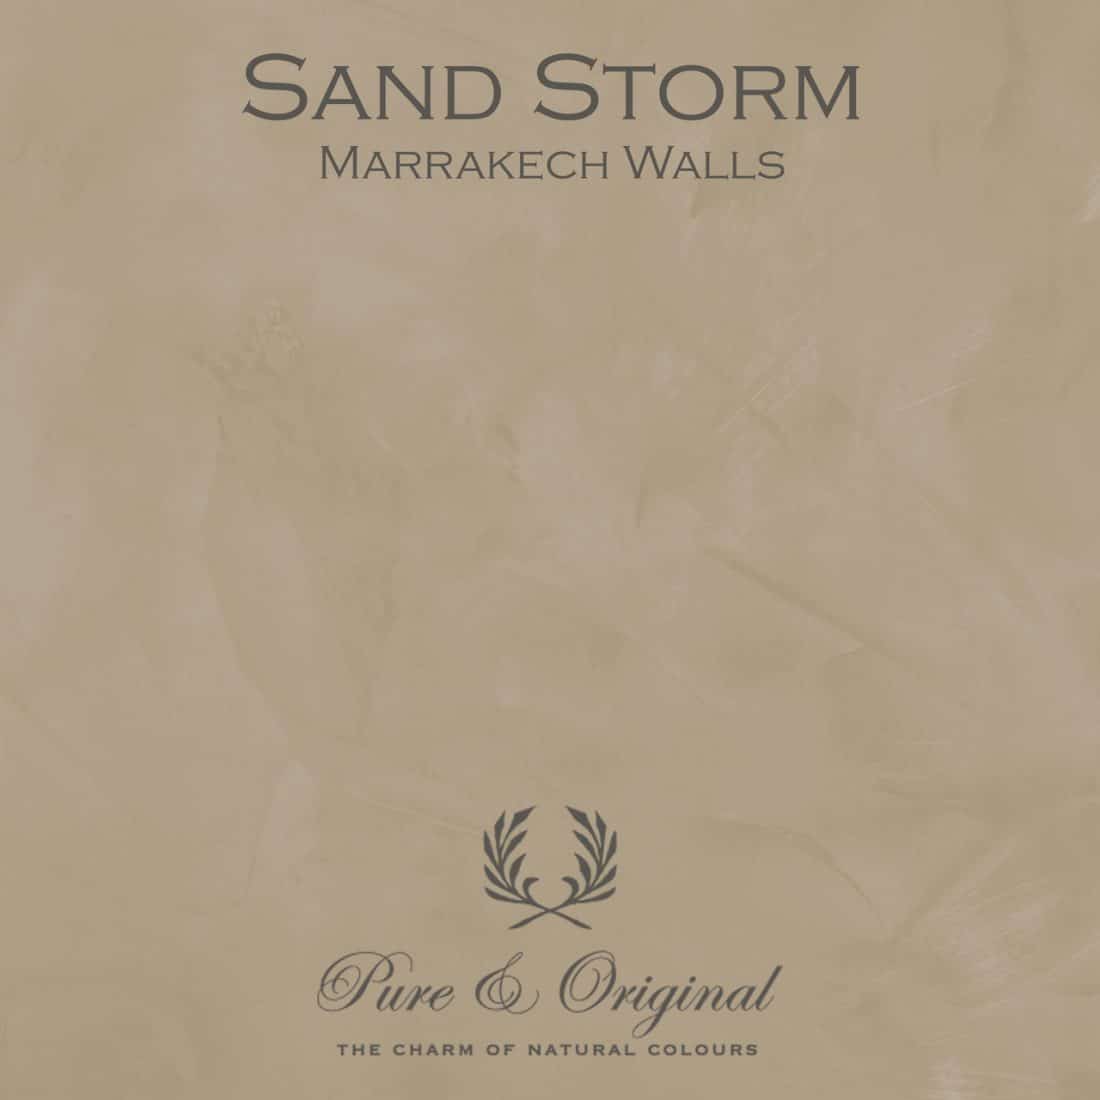 Sand Storm Marrakech Walls Pure Original